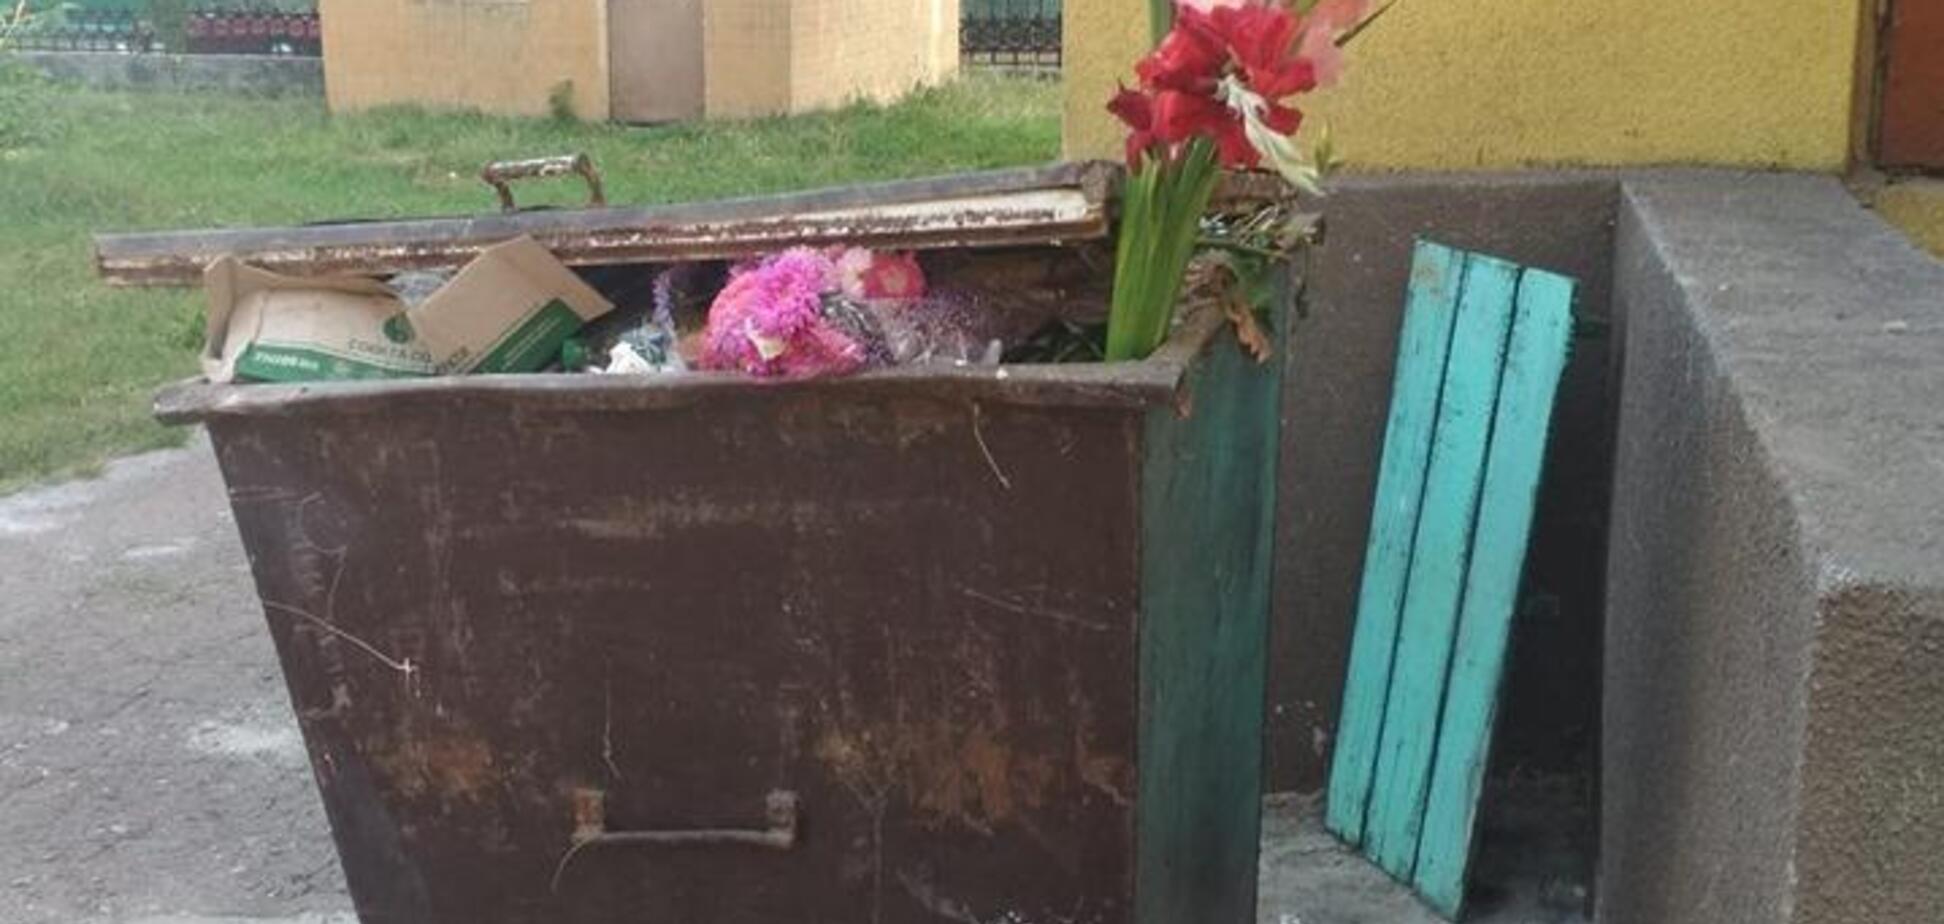 Викинули квіти у смітник: школа Чернігова оскандалилася на День знань